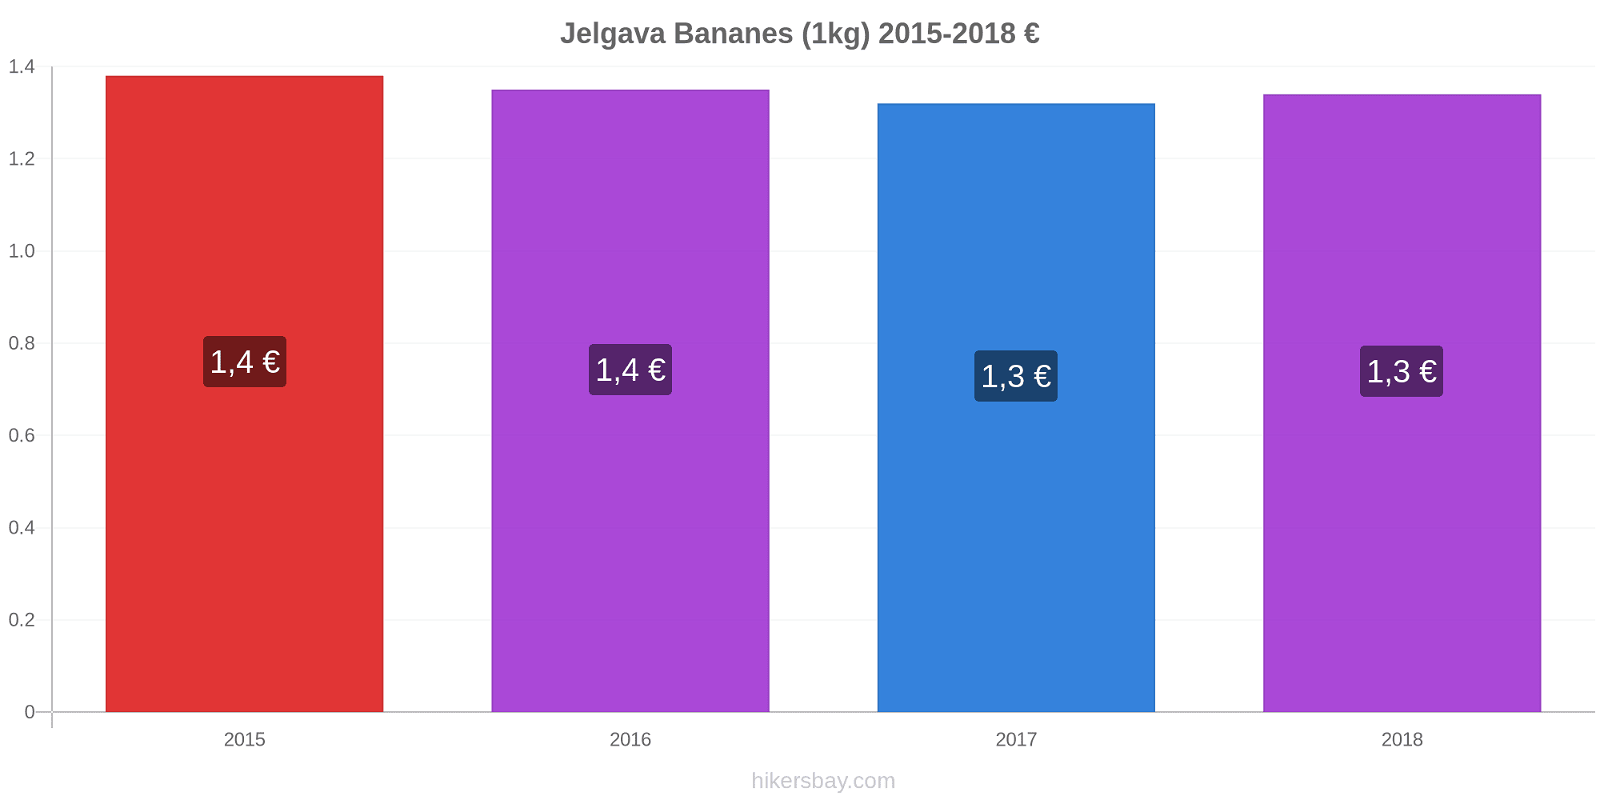 Jelgava changements de prix Bananes (1kg) hikersbay.com